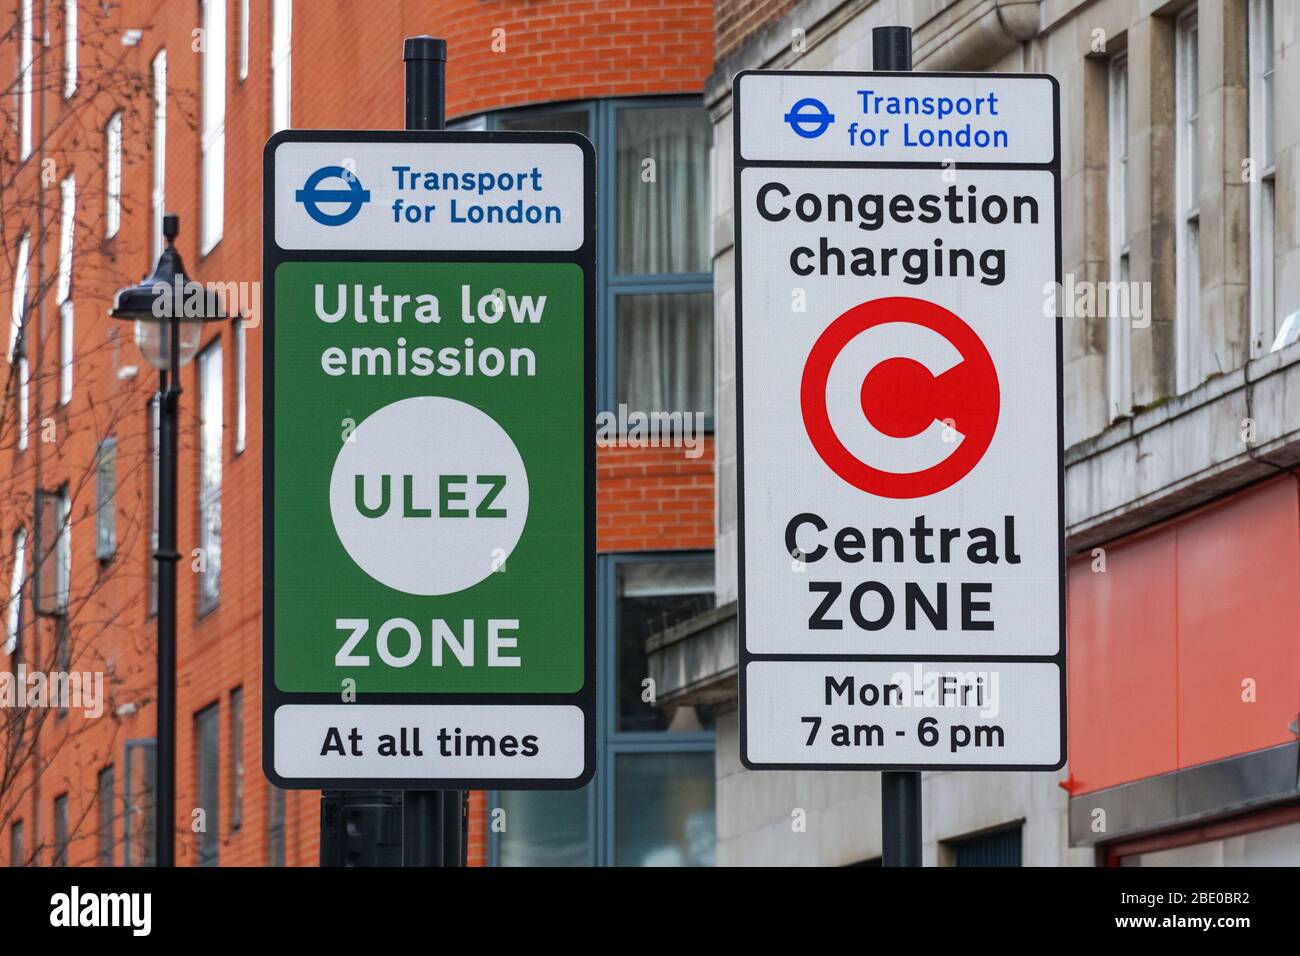 Panneau congestion charge et Ultra Low Emission zone à Marylebone, Londres Angleterre Royaume-Uni Banque D'Images